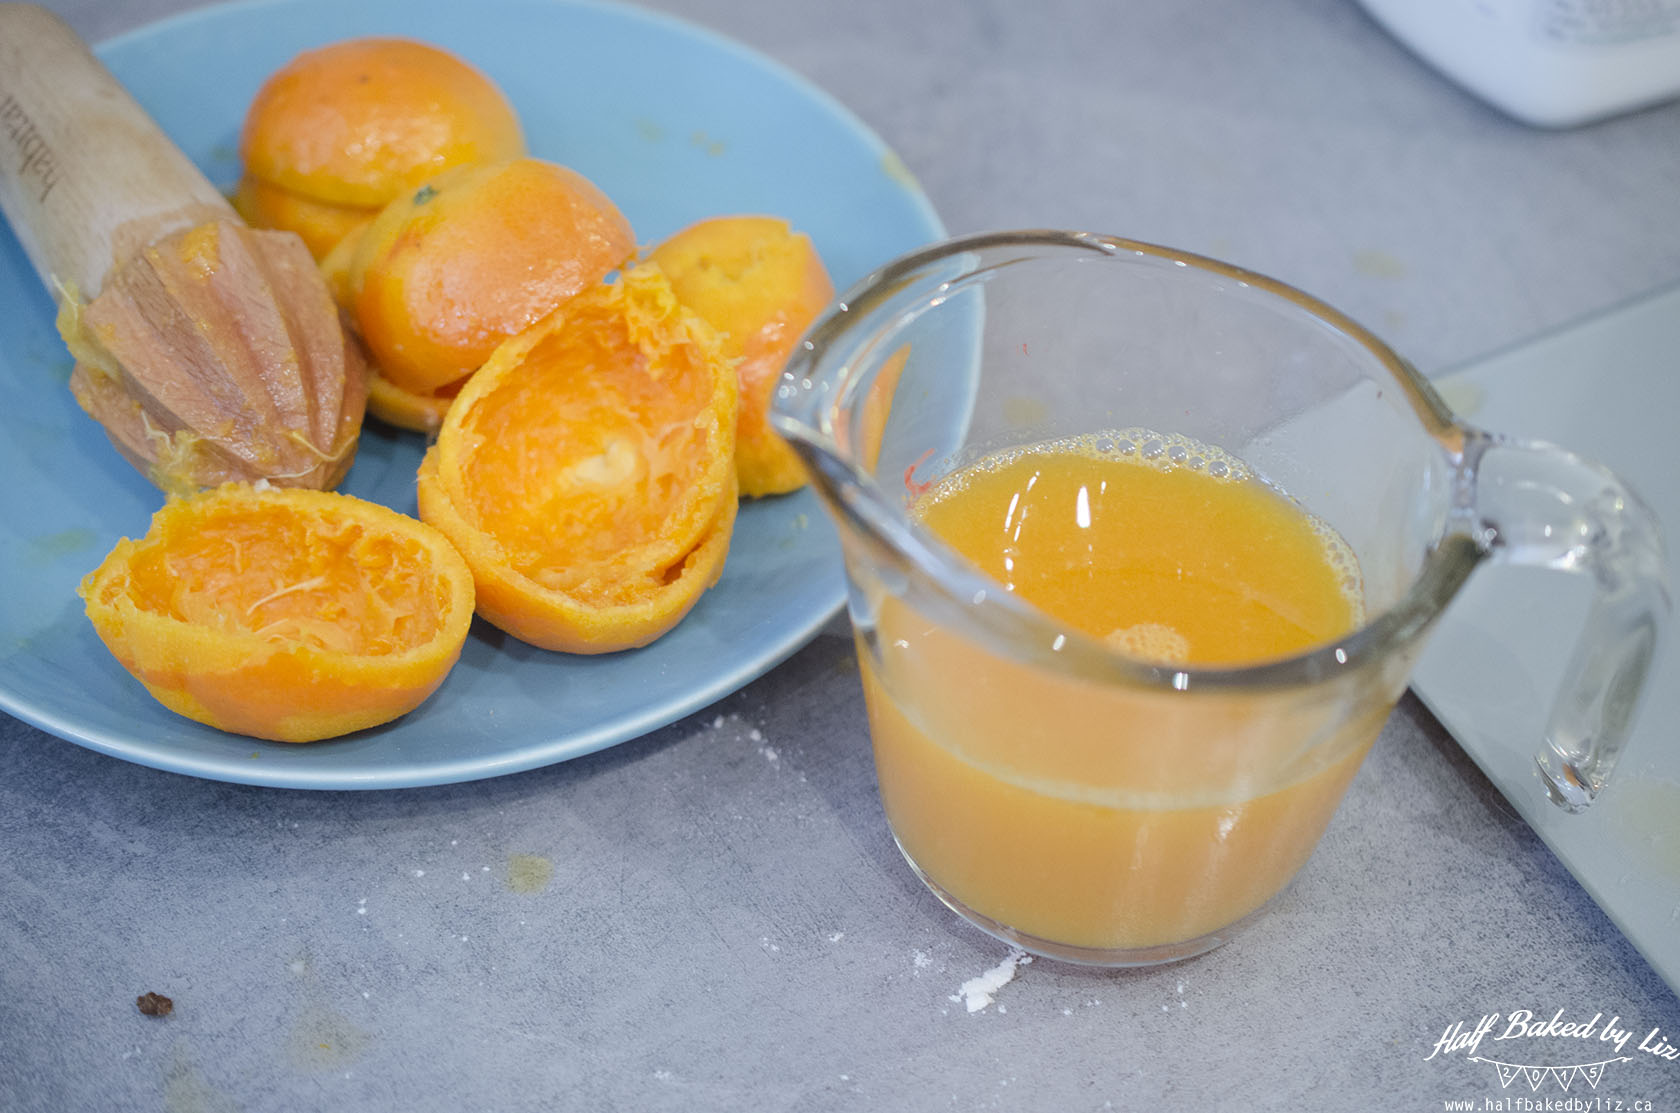 2 - Clementine Juice